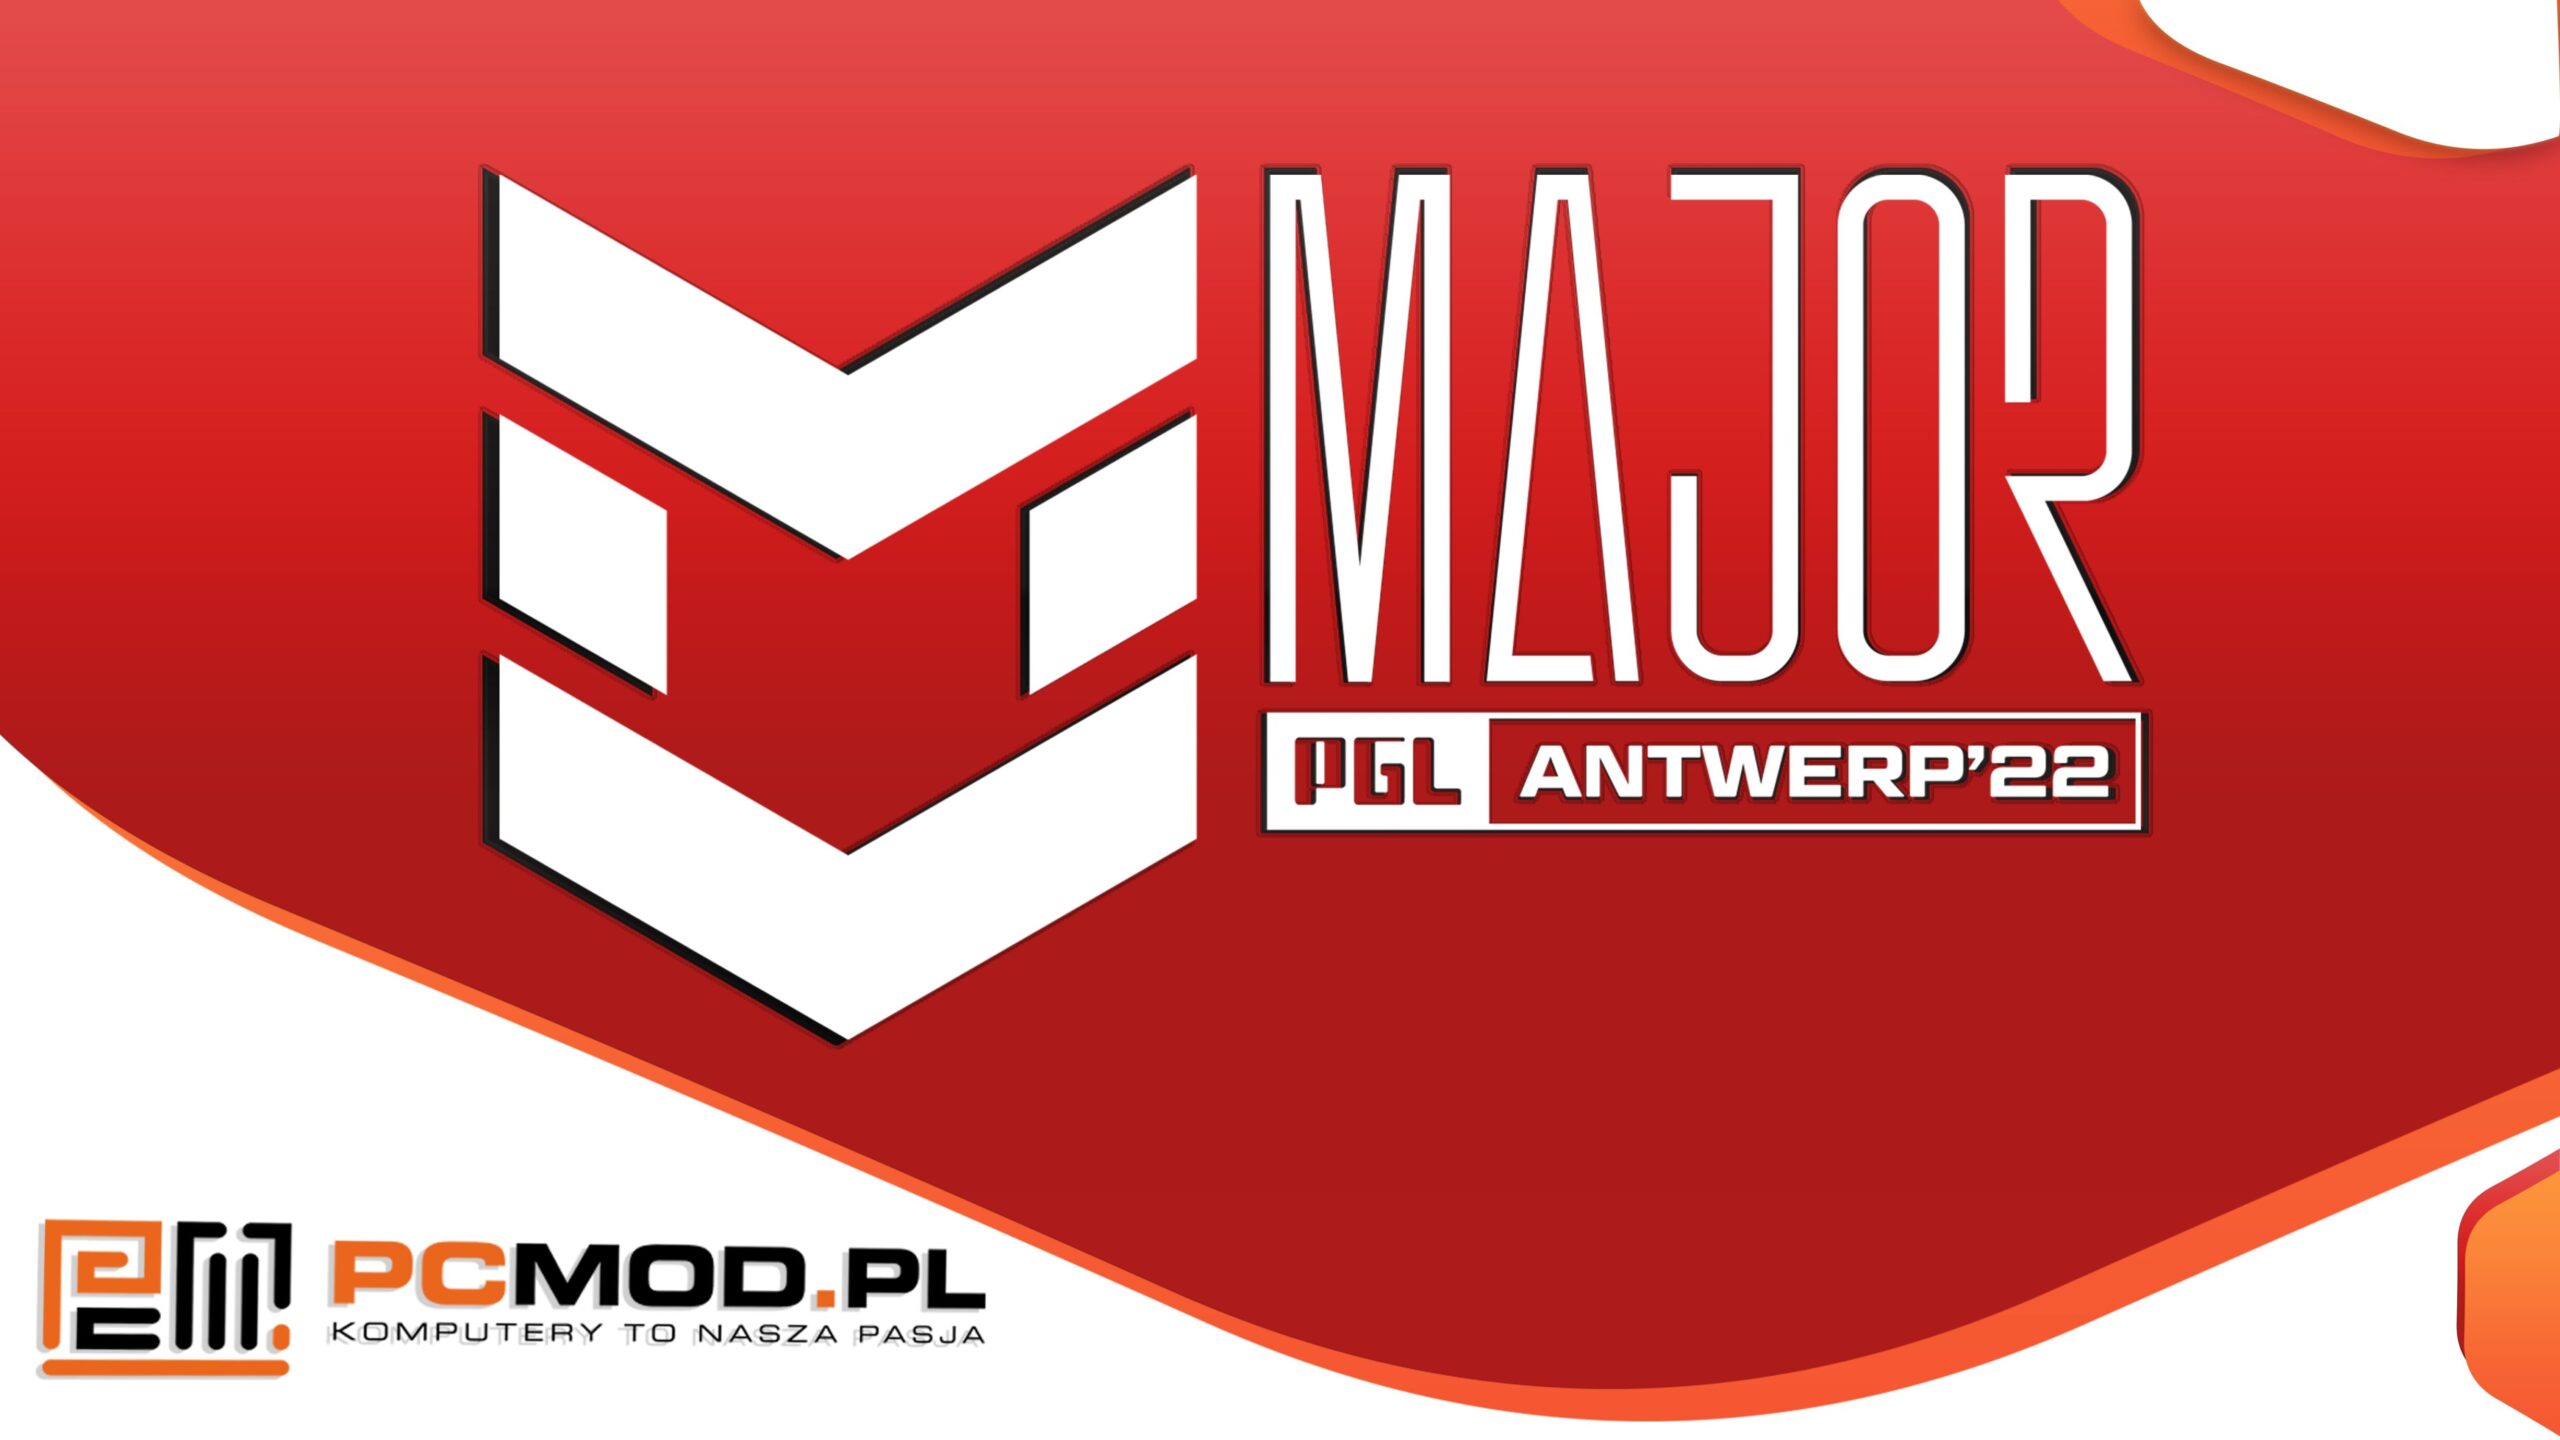 PGL Major Antwerp 2022 1